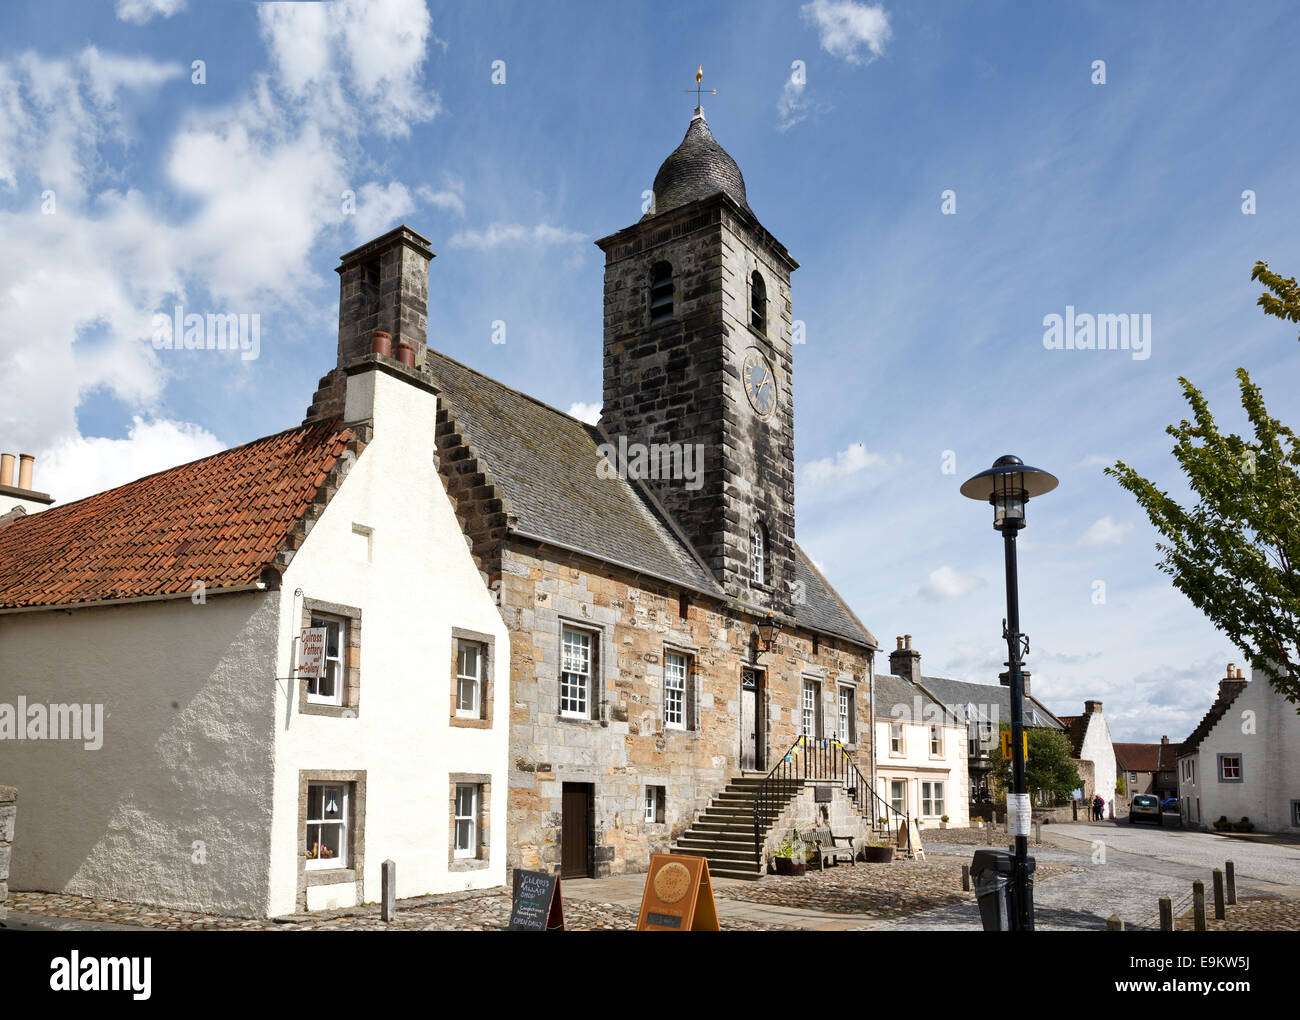 Le village de Culross dans le Fife, en Écosse. Cuileann gaélique : Ros Banque D'Images